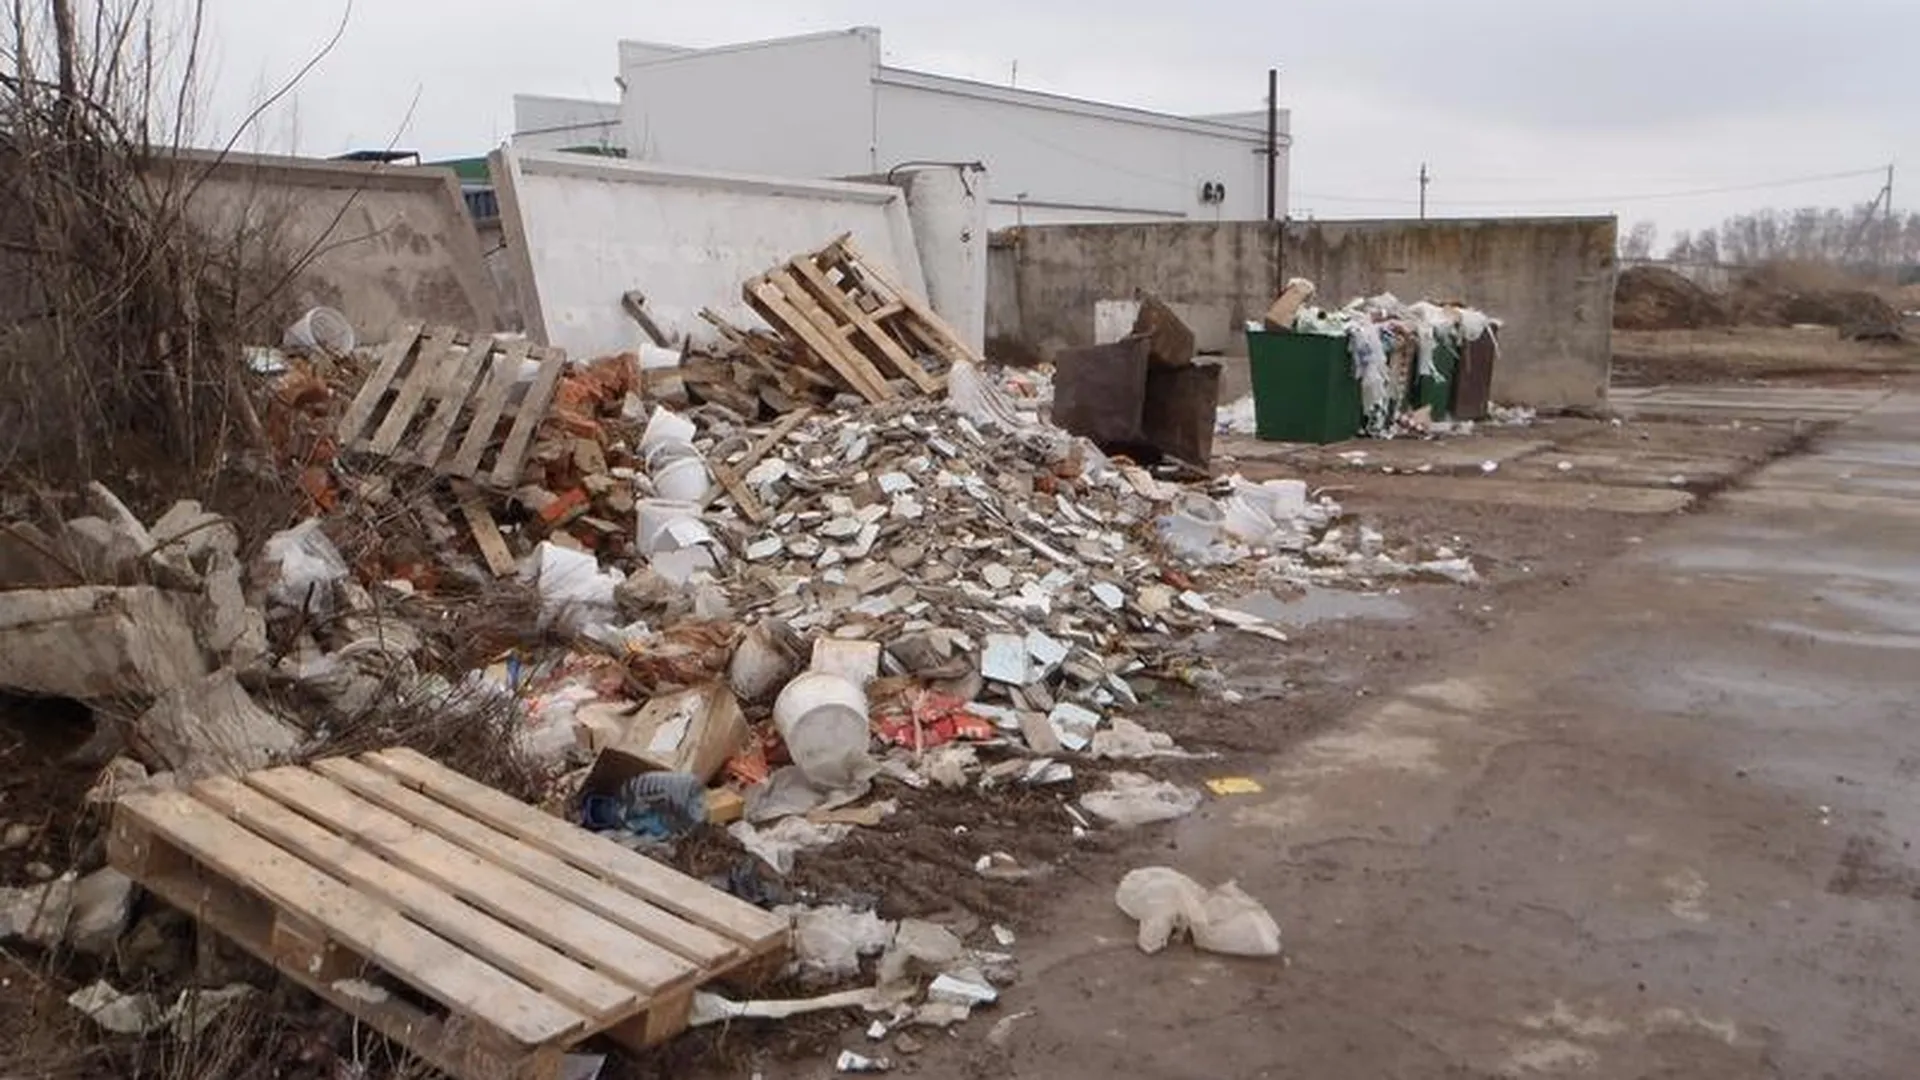 Десять свалок мусора ликвидировали в Коломенском районе